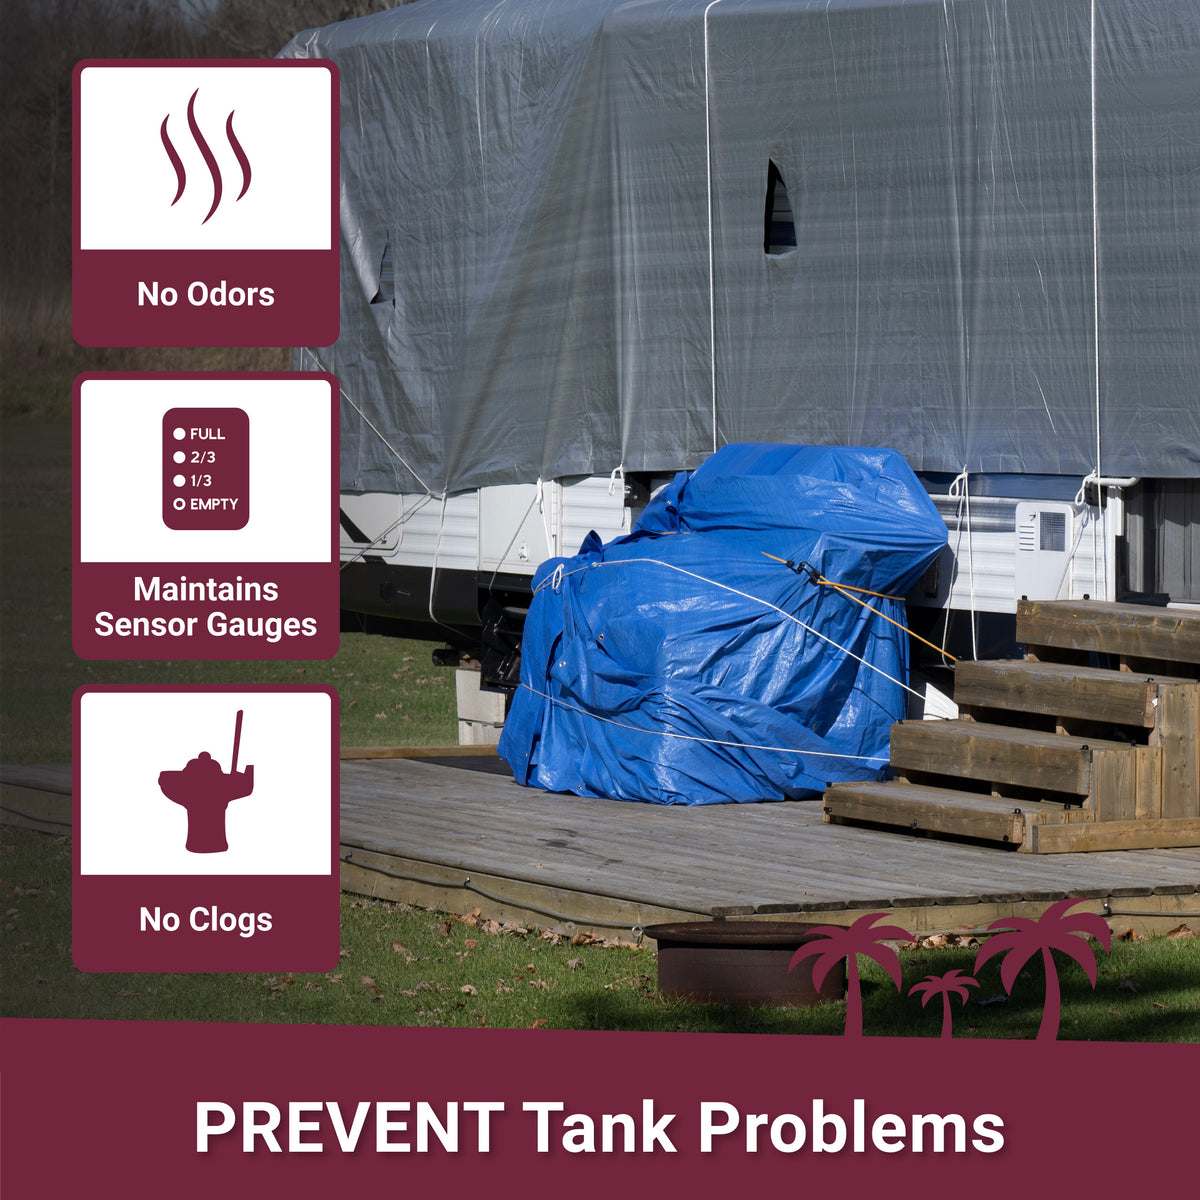 Prevent tank problems, no odors, maintain sensors, no clogs. Unique Camping + Marine 